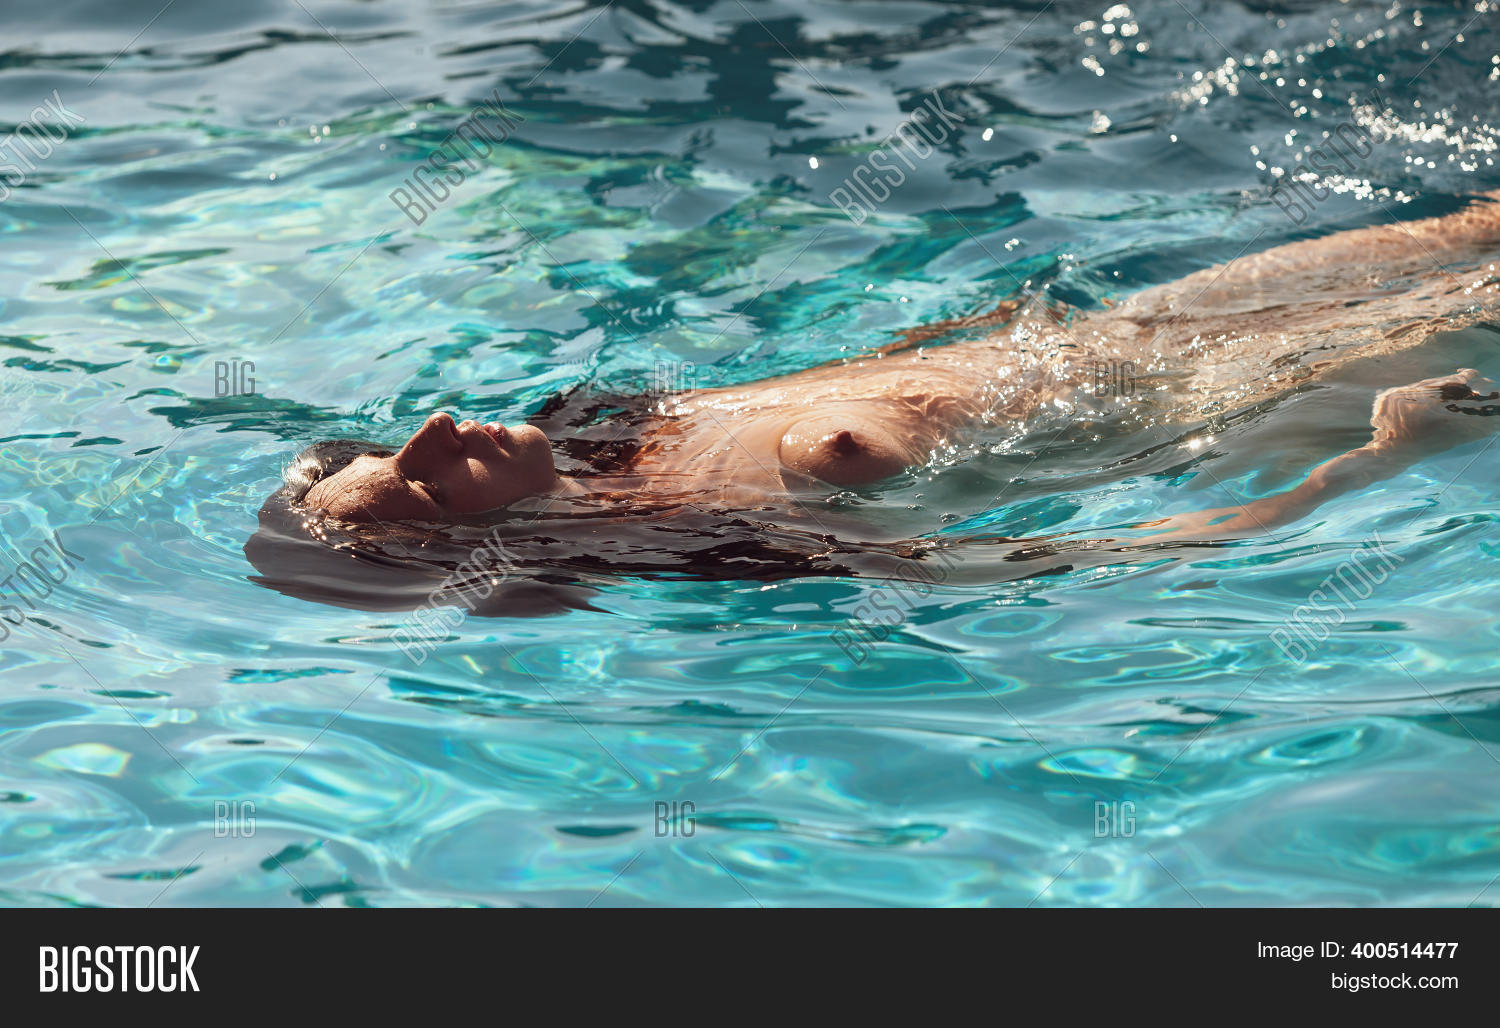 carol herring share women swimming nude photos